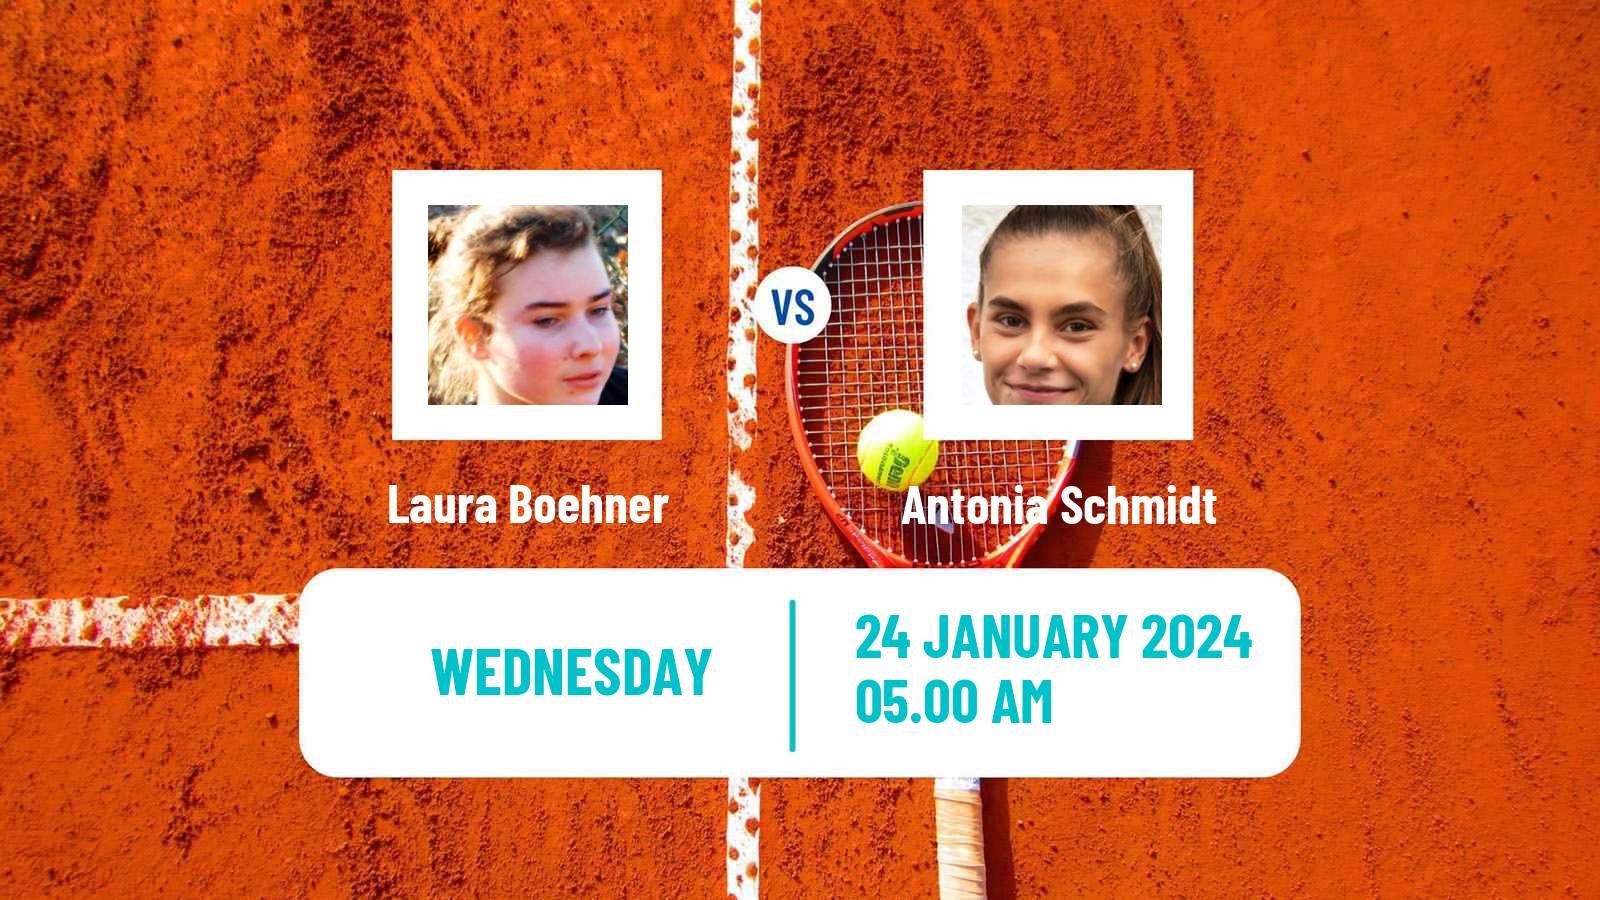 Tennis ITF W35 Le Gosier Women Laura Boehner - Antonia Schmidt